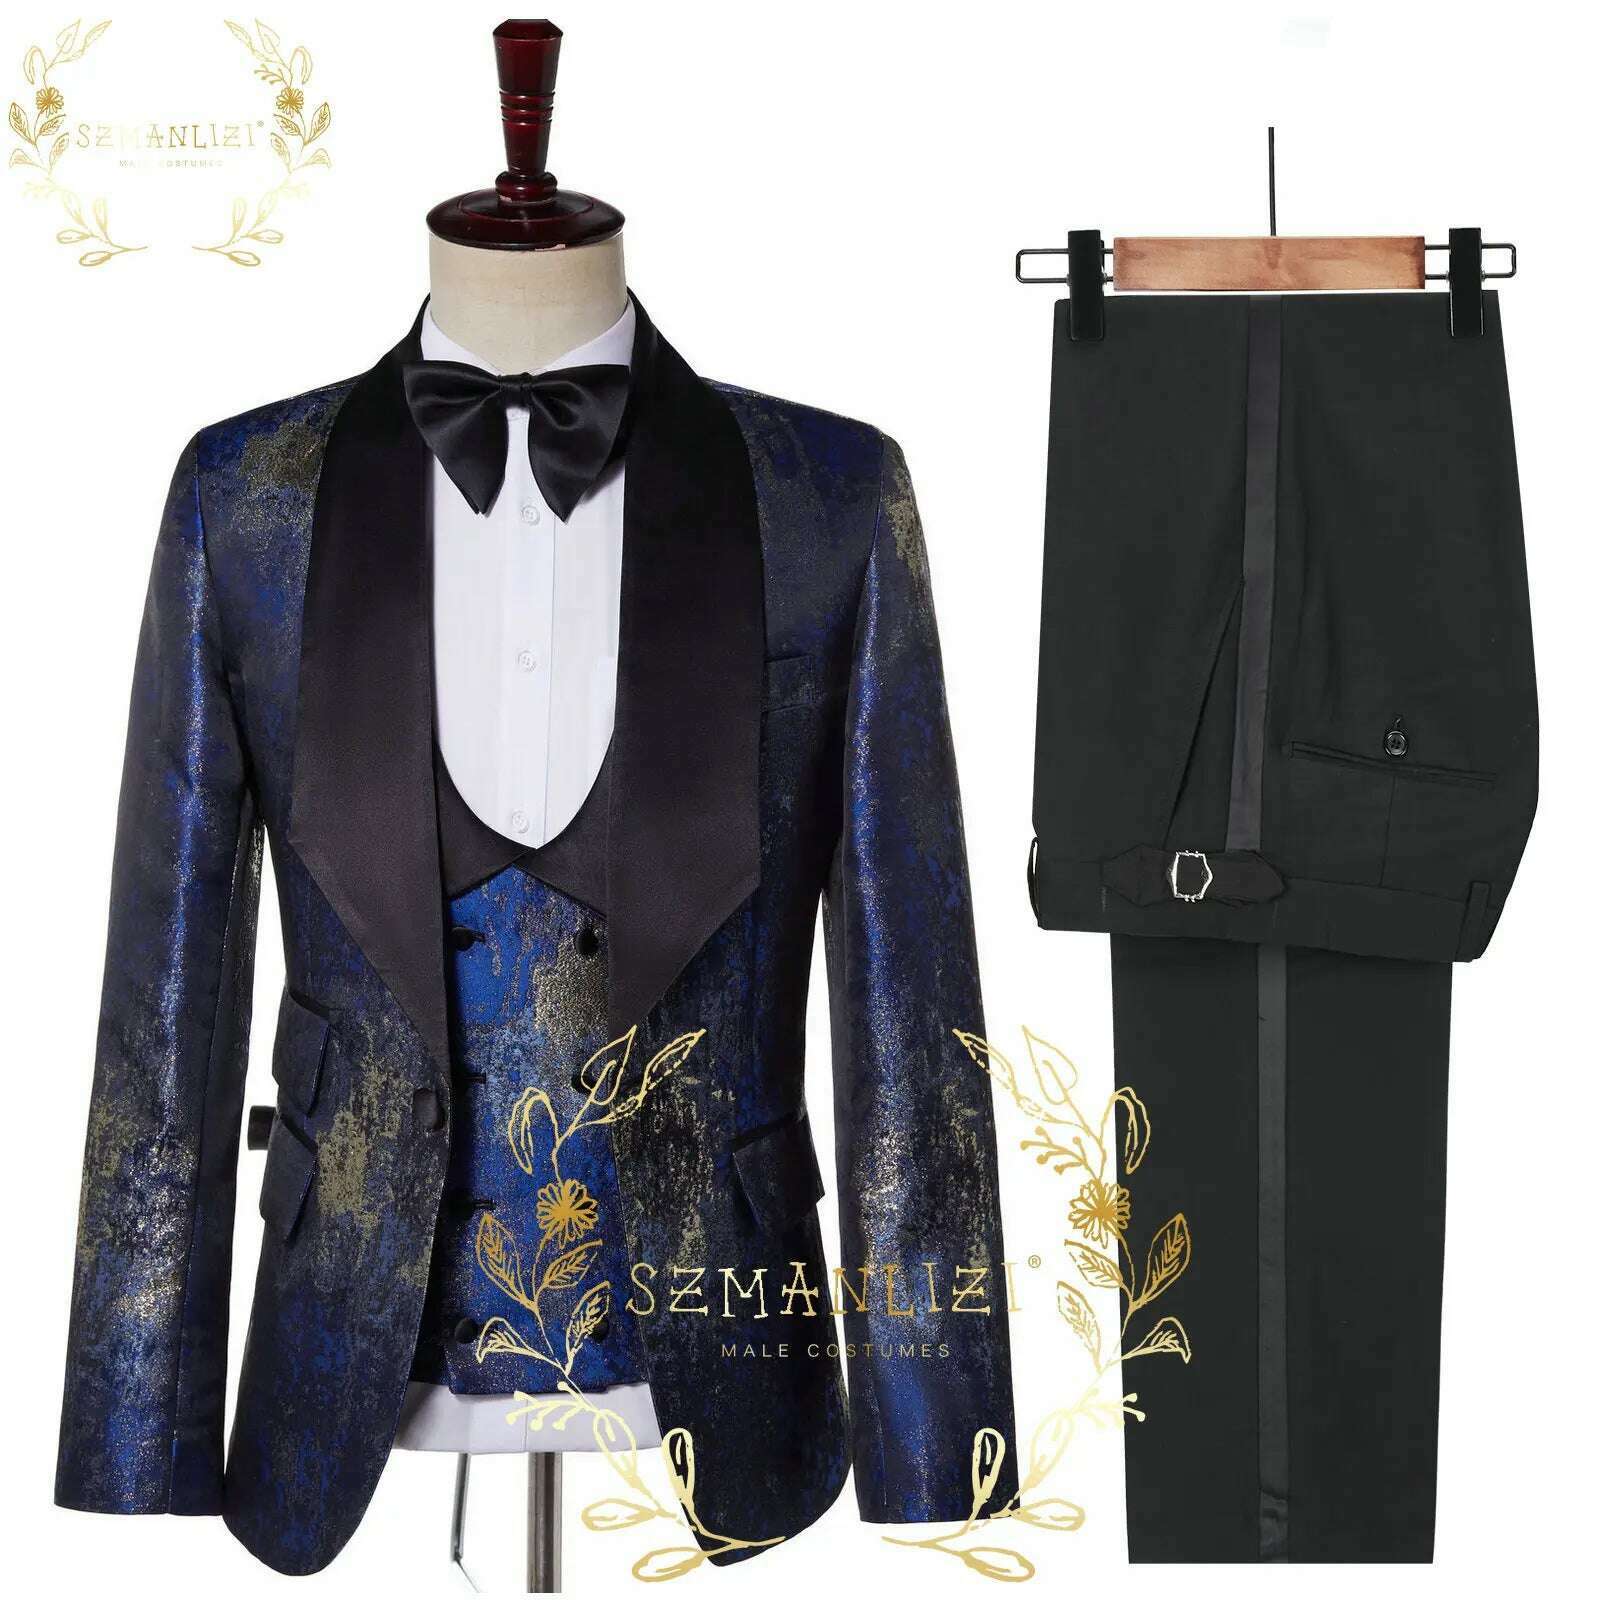 KIMLUD, Luxury Floral Wedding Tuxedo For Groom Slim Fit Men Suits Brown Velvet Peak Lapel Costume Homme 3 Pieces Blazer Vest Pants Sets, as picture 2 / XS(EU44 Or US34), KIMLUD Women's Clothes